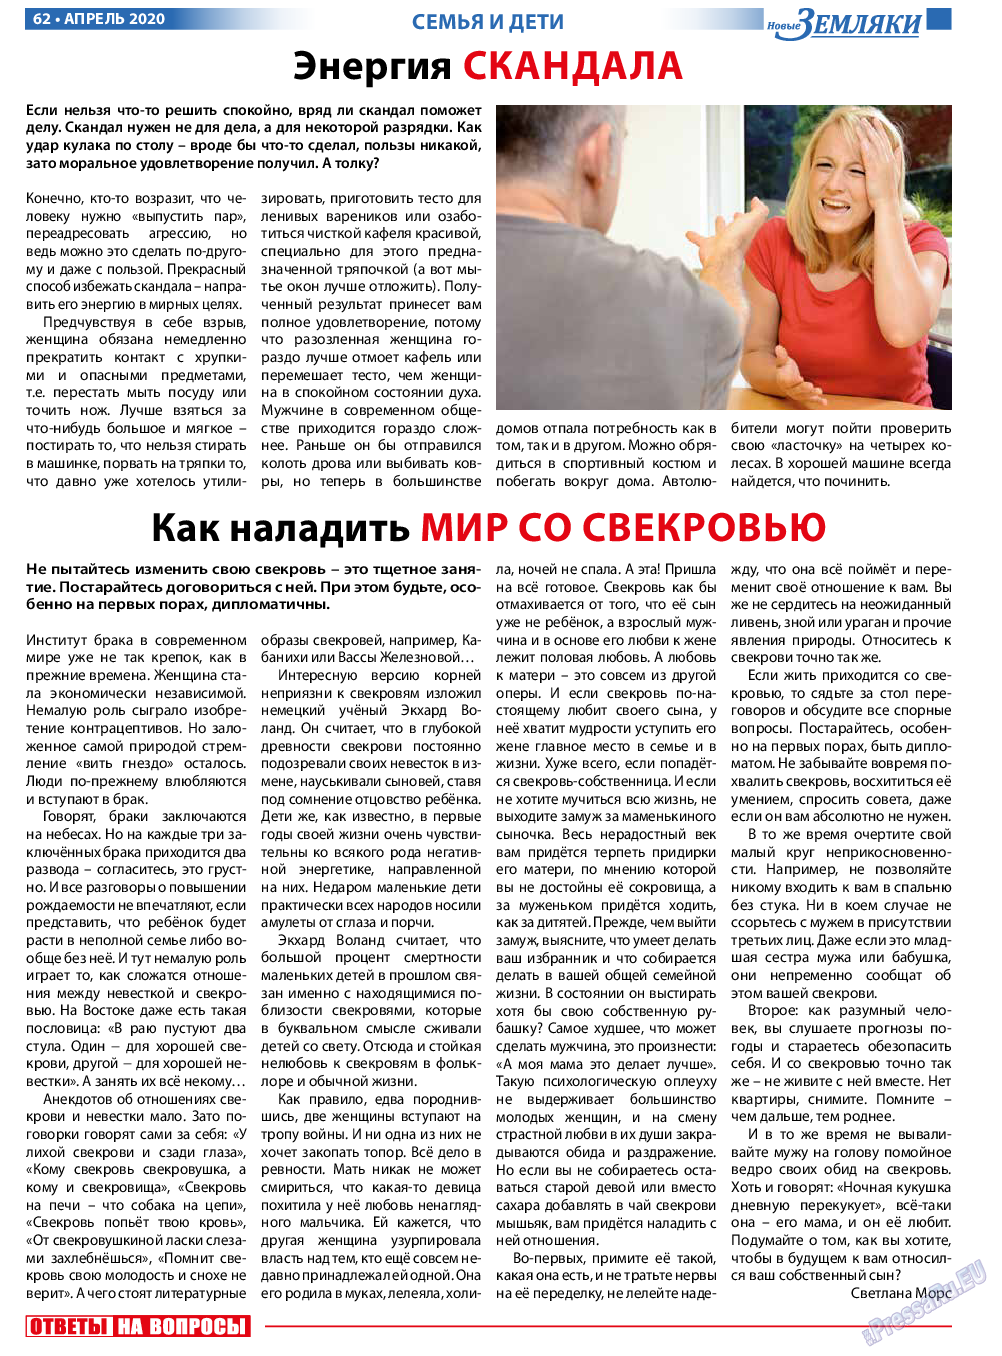 Новые Земляки (газета). 2020 год, номер 4, стр. 62